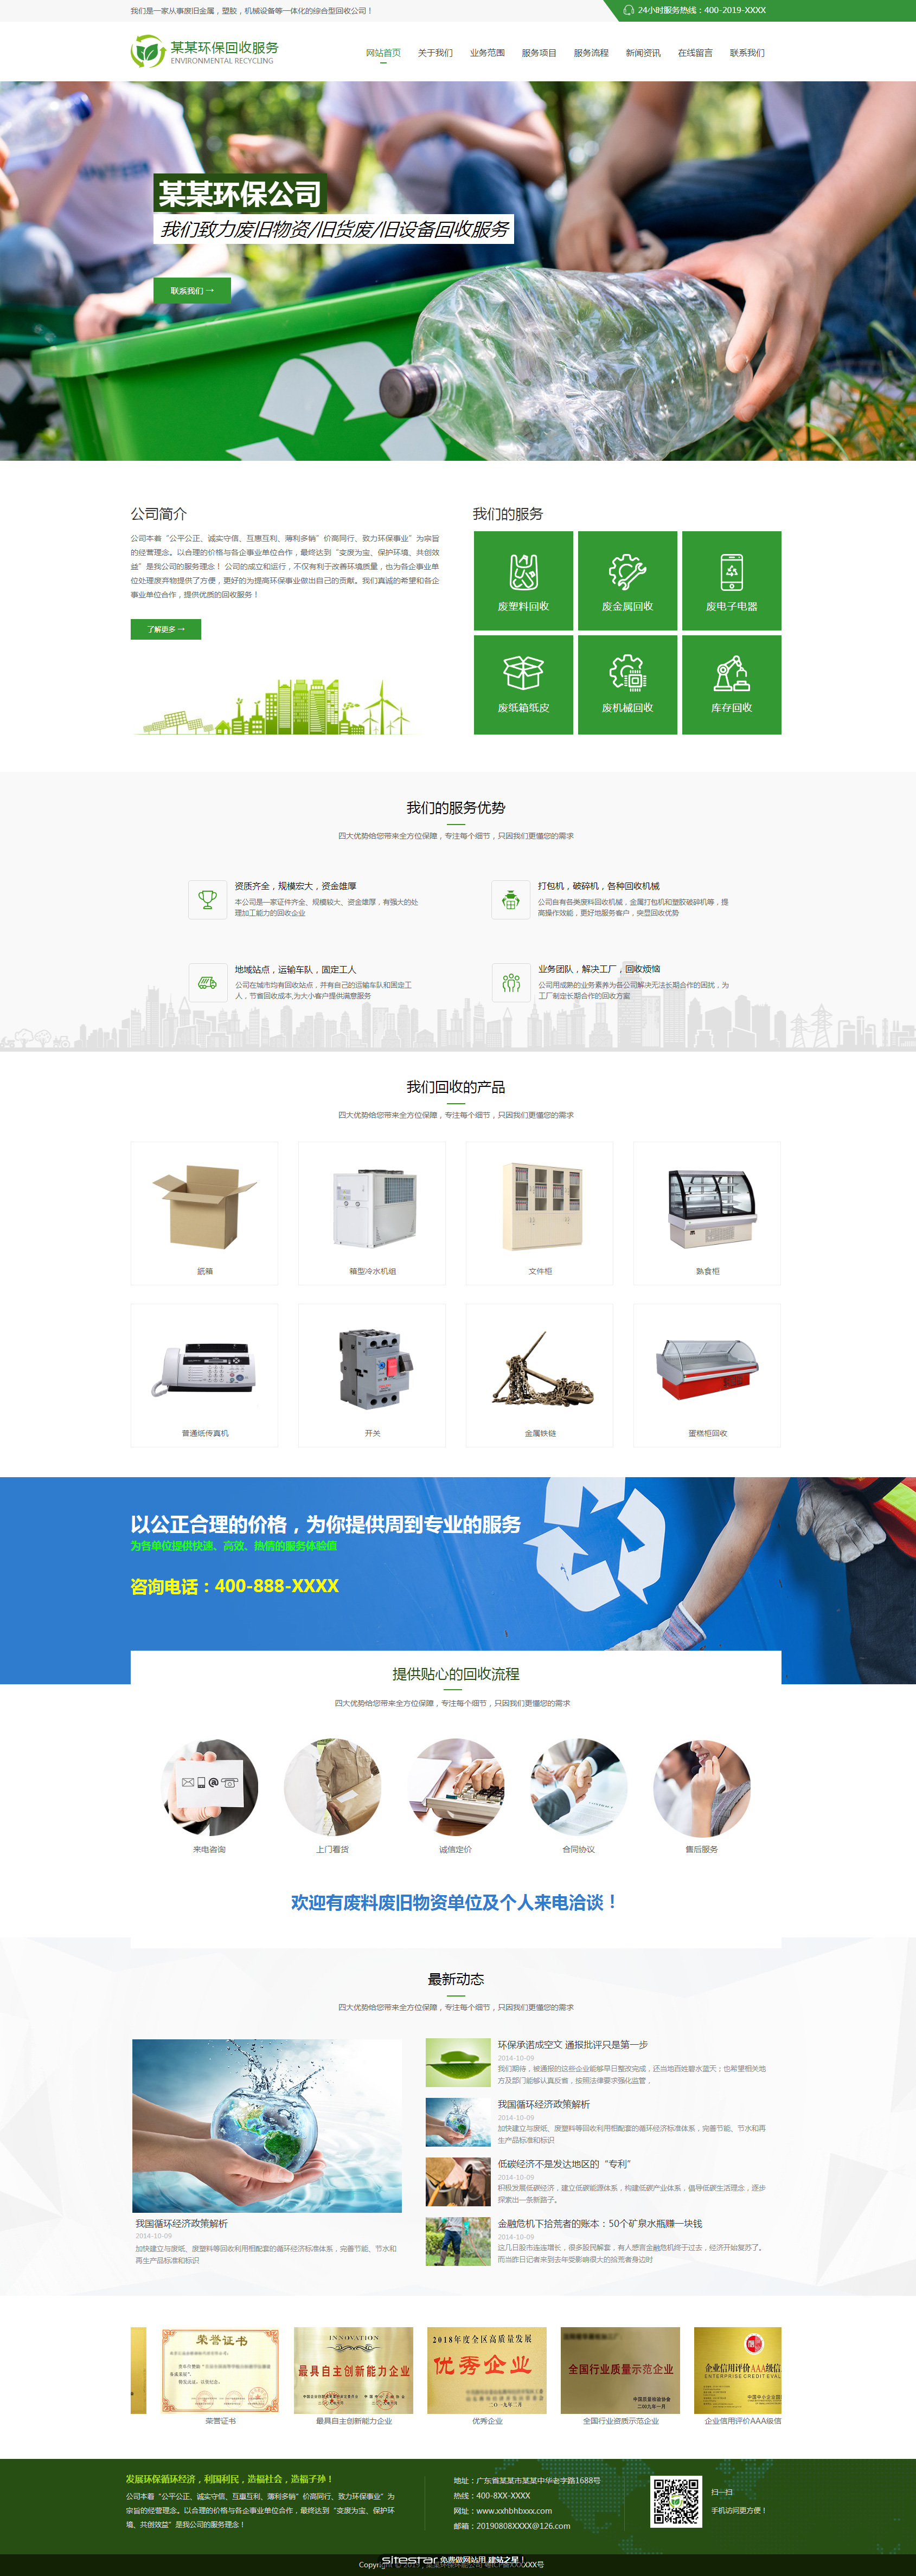 企业网站精美模板-environment-1229116